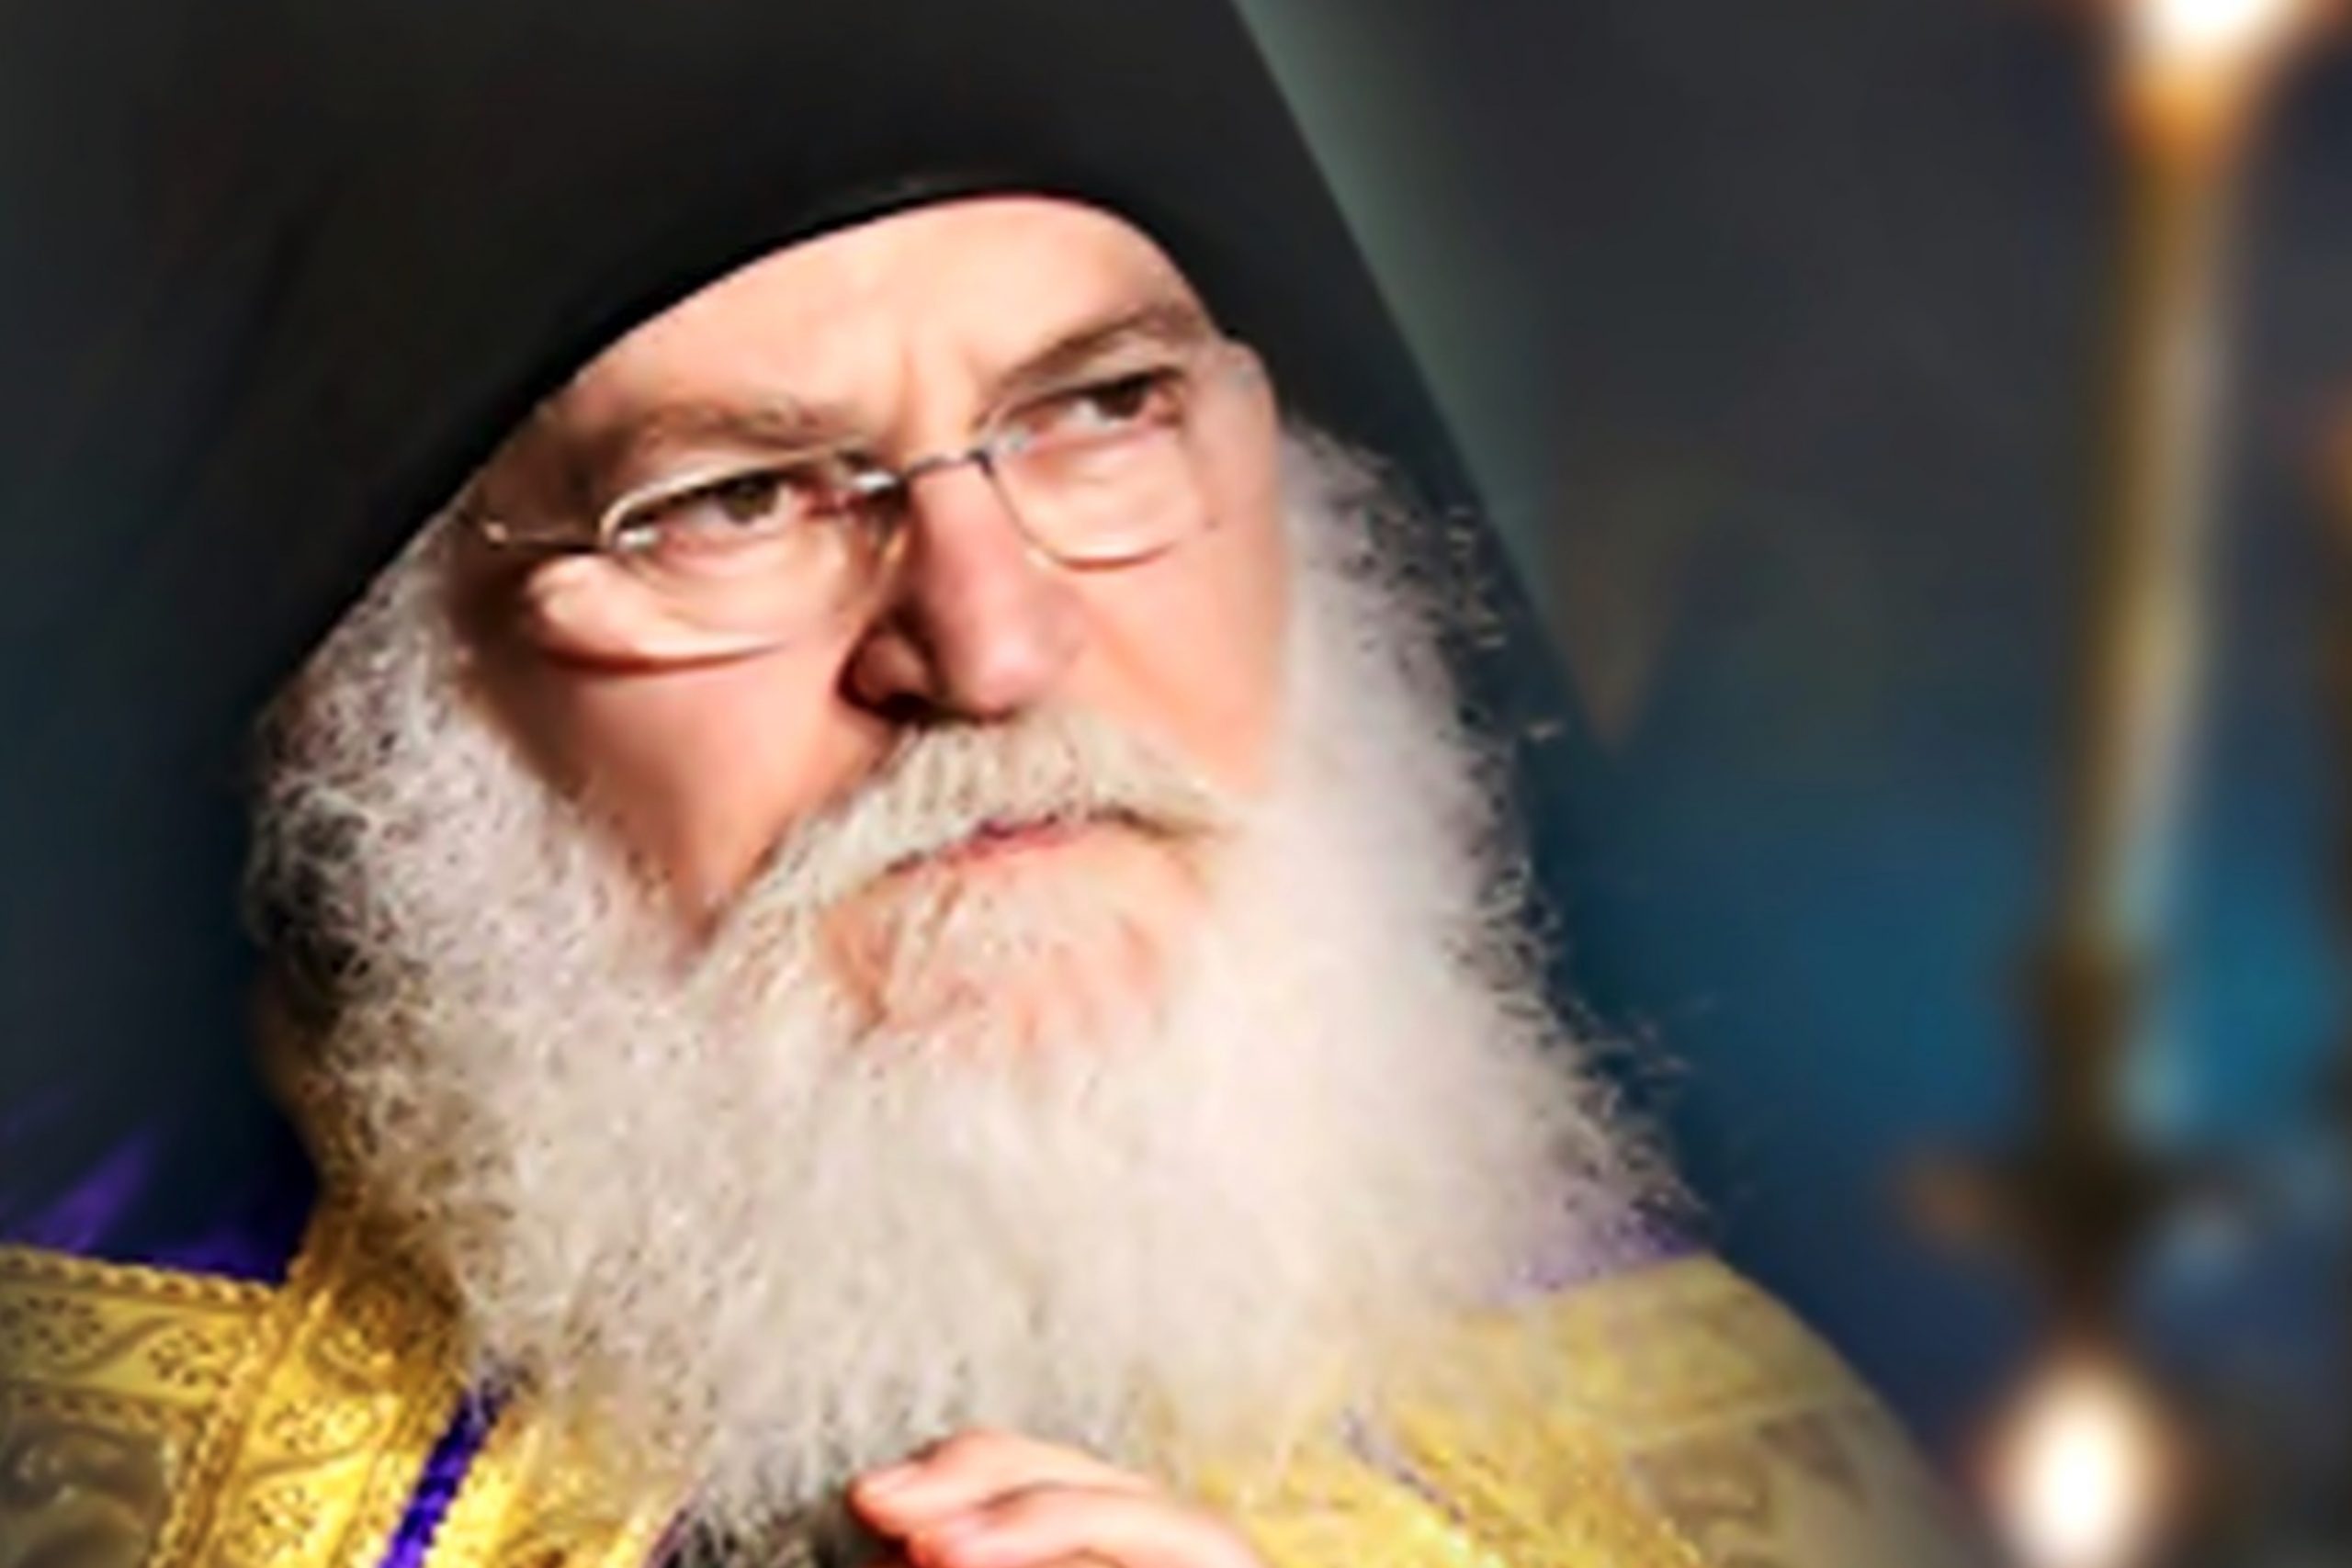 Contaminé par la COVID-19, l’archimandrite Éphrem de Vatopédi a été intubé